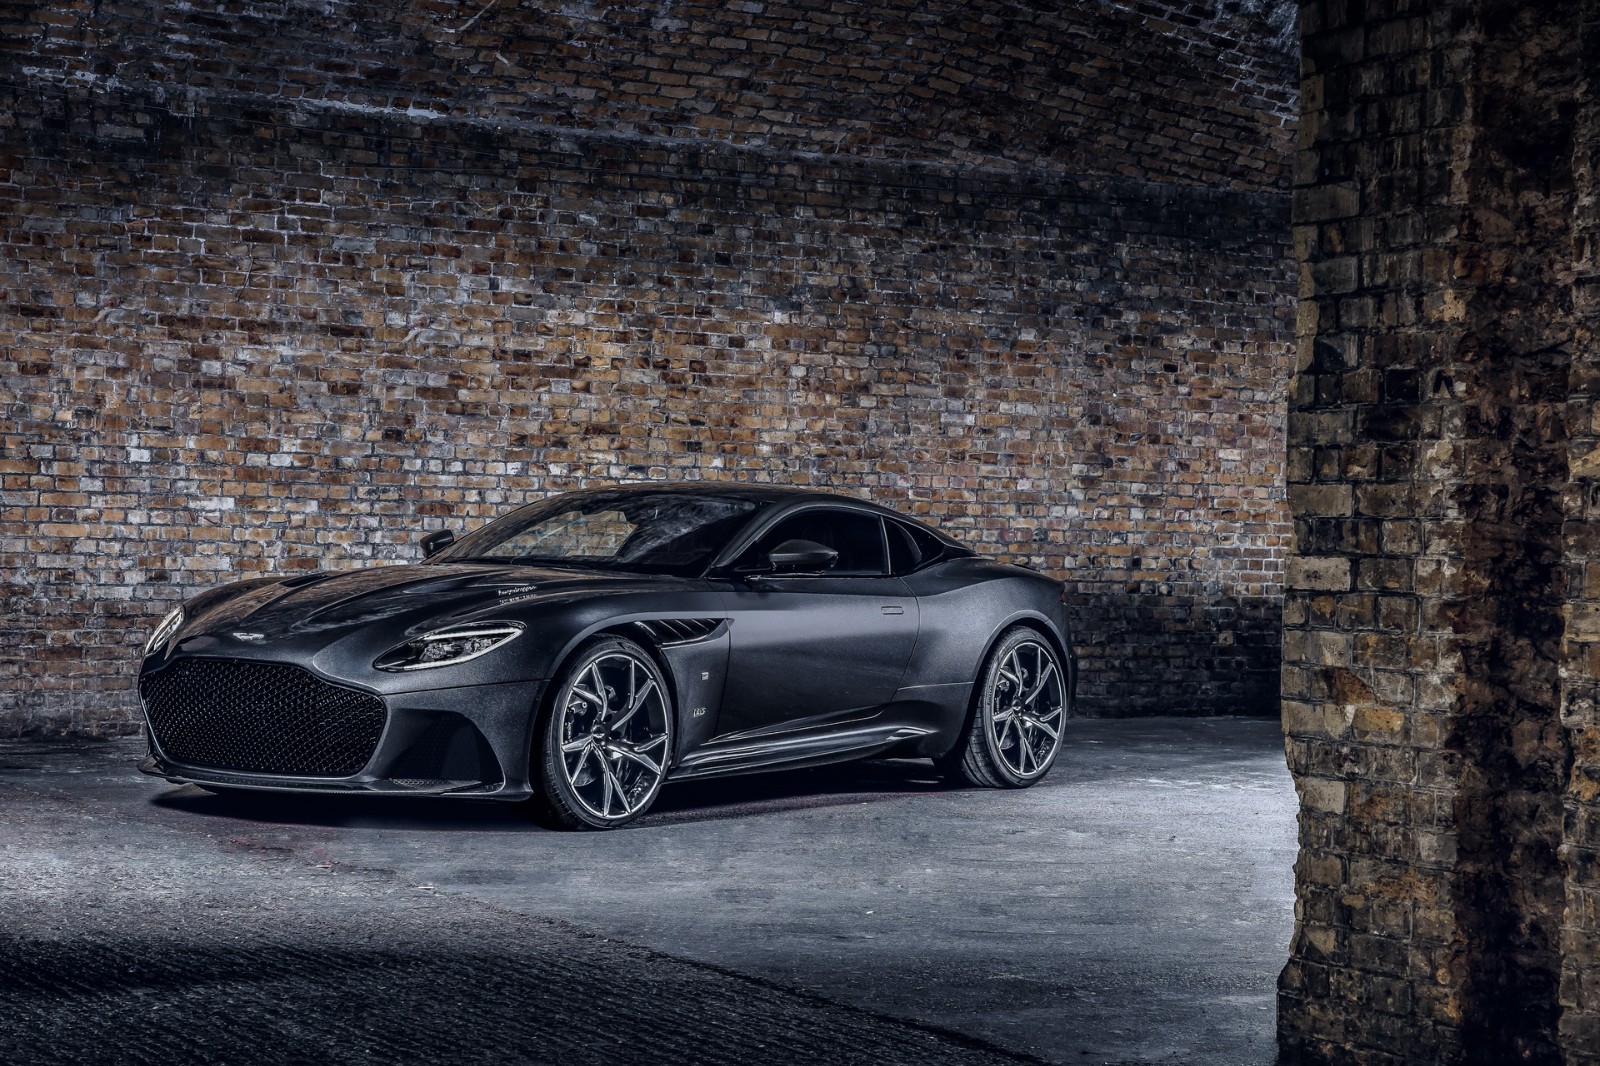 【梗係要借題發揮吓啦】Aston Martin趁有新占士邦電影上映推出兩款限量版